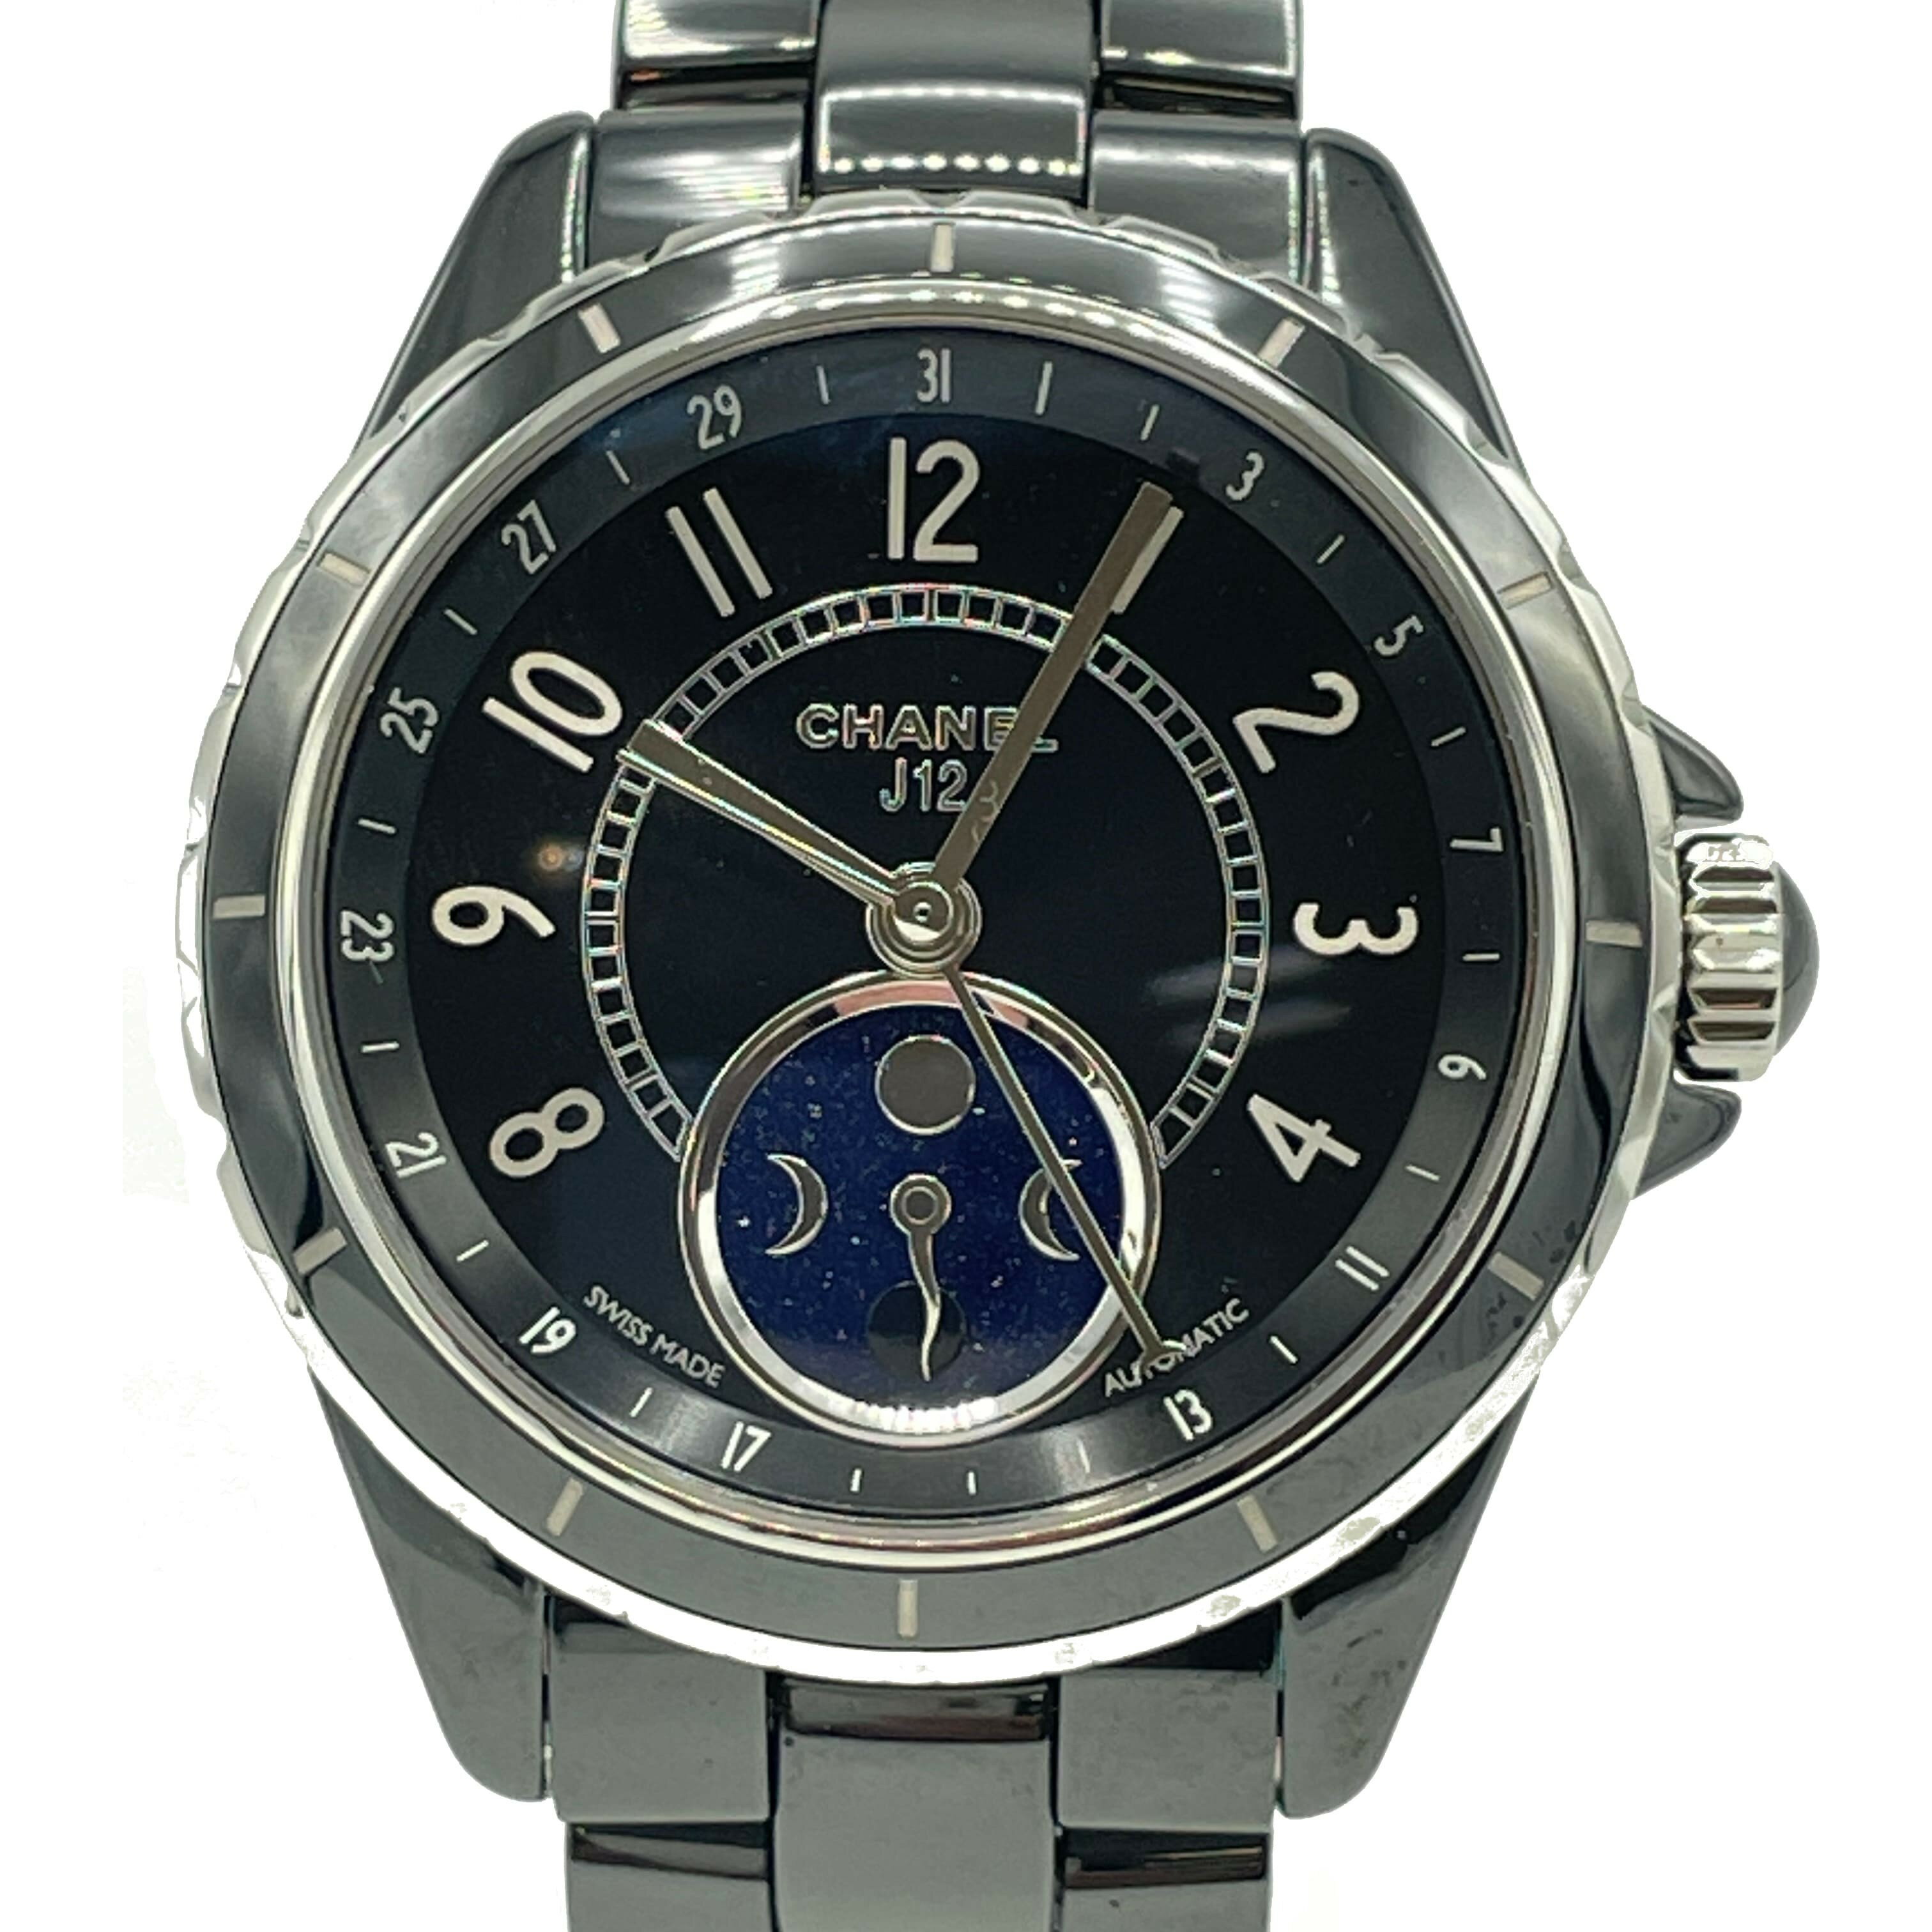 CHANEL(シャネル) J12ファーズドゥリュヌ 腕時計 H3406 ブラックセラミック ランクA